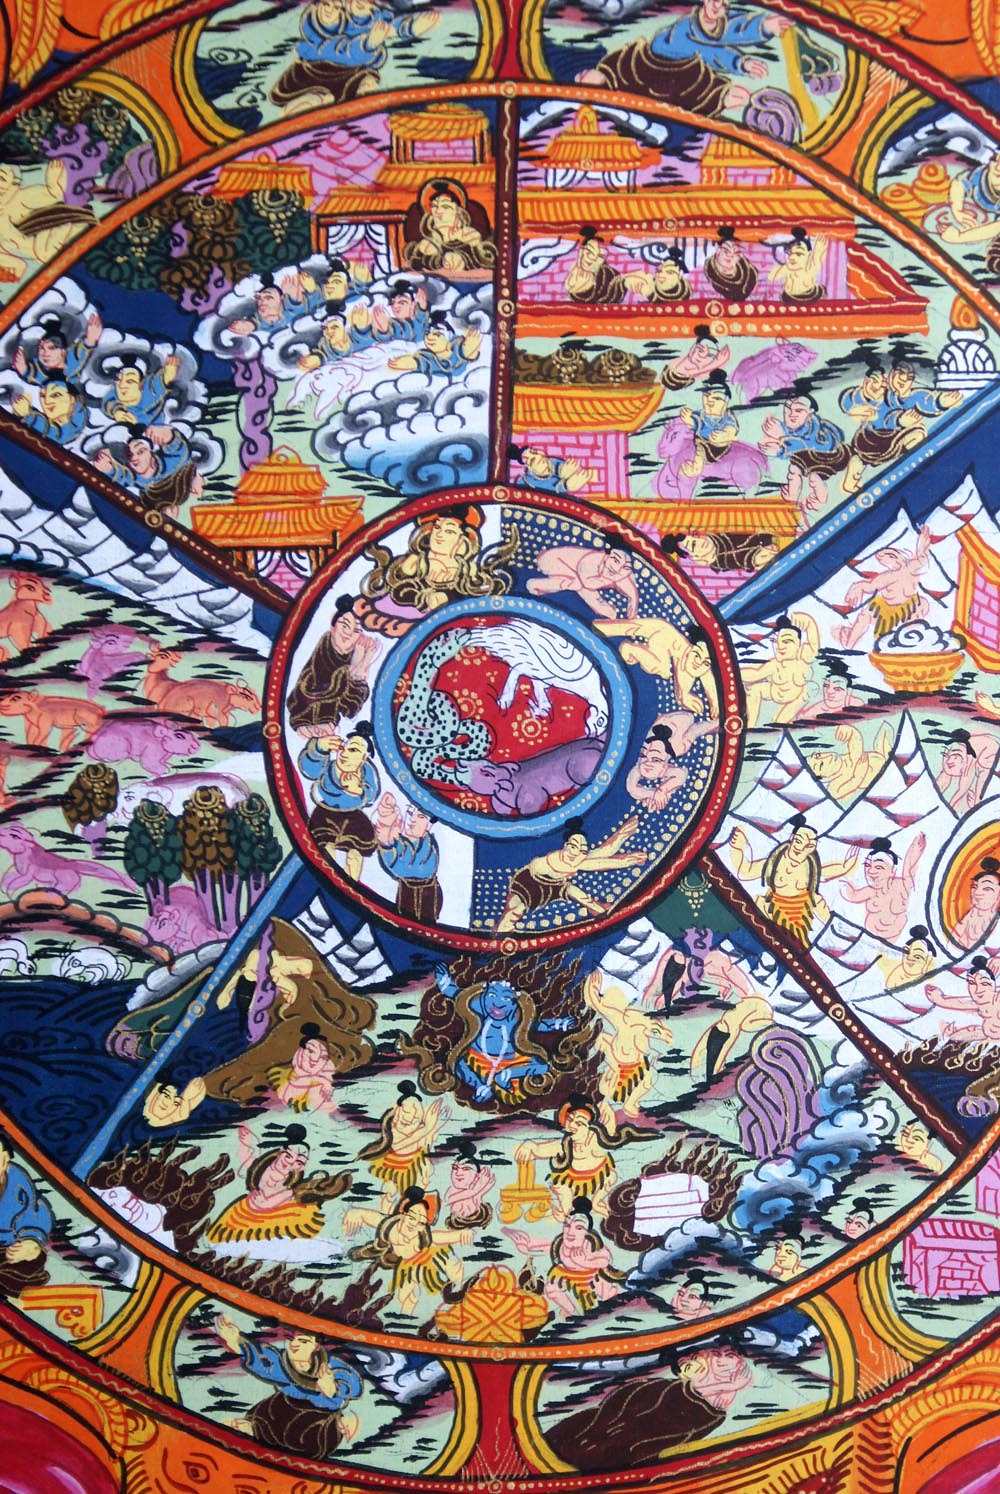 tibetan wheel of life 1000 piece puzzle